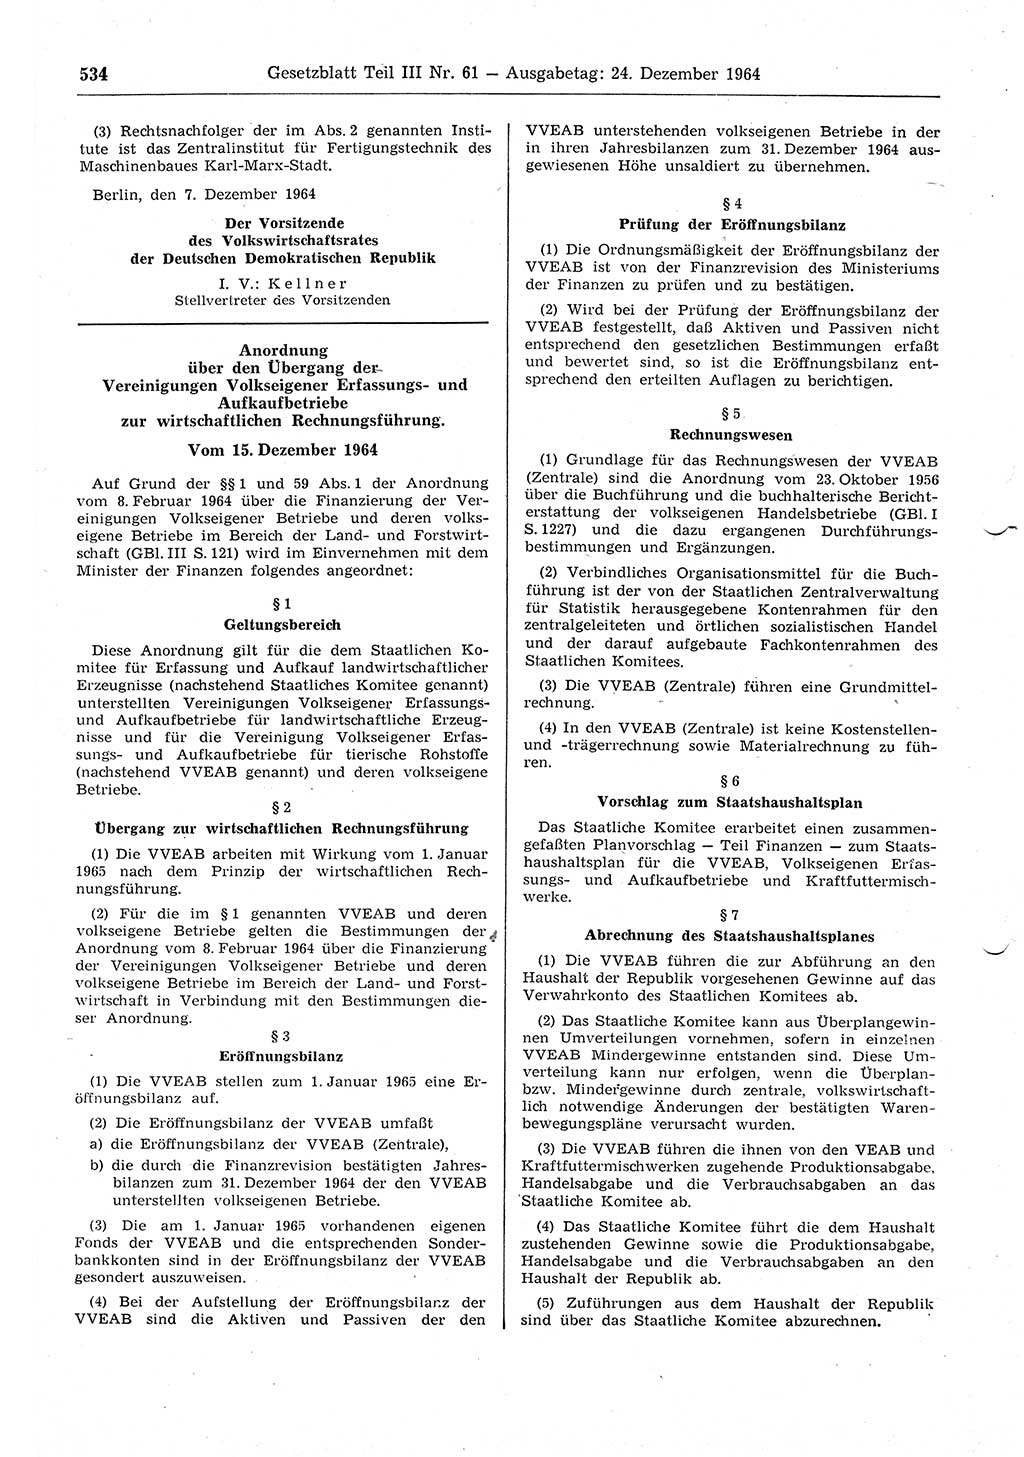 Gesetzblatt (GBl.) der Deutschen Demokratischen Republik (DDR) Teil ⅠⅠⅠ 1964, Seite 534 (GBl. DDR ⅠⅠⅠ 1964, S. 534)